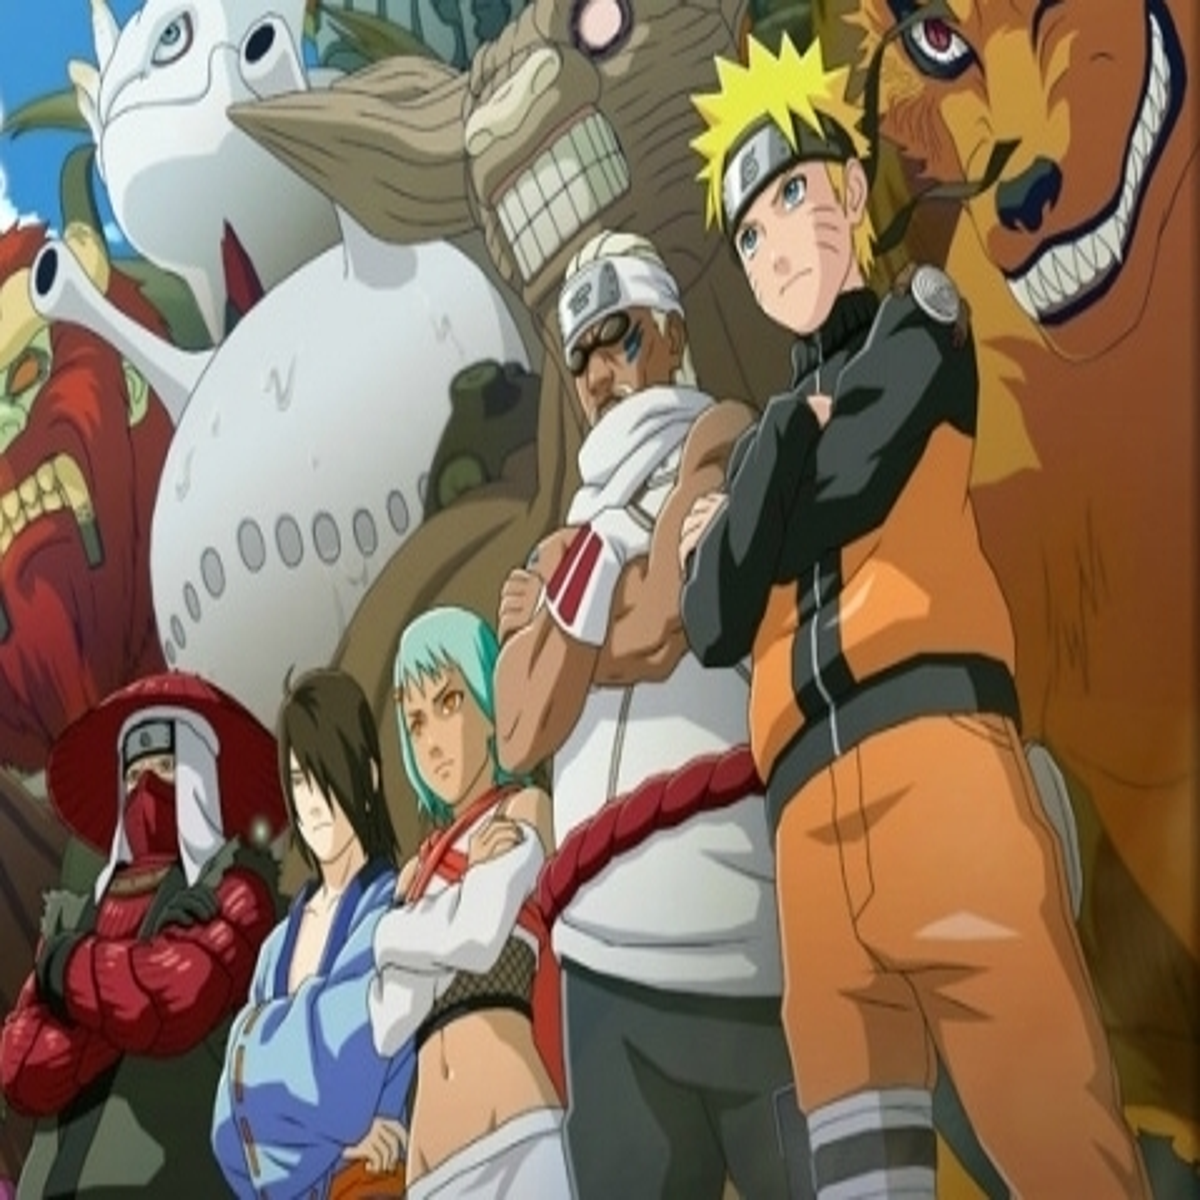 Naruto Shippuden - Os 80 personagens principais da história